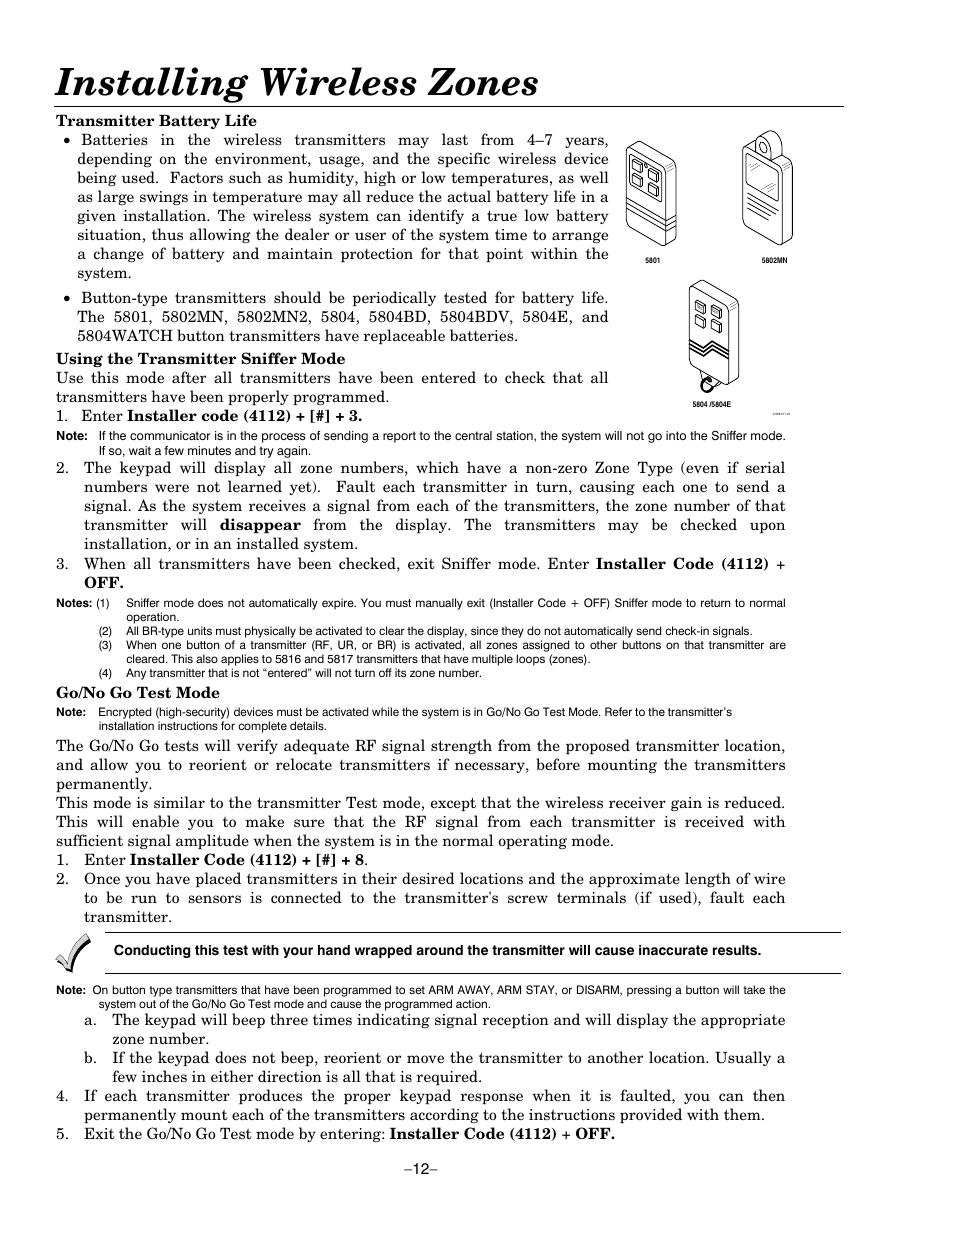 Installing wireless zones | Honeywell ADEMCO LYNXR-EN User Manual